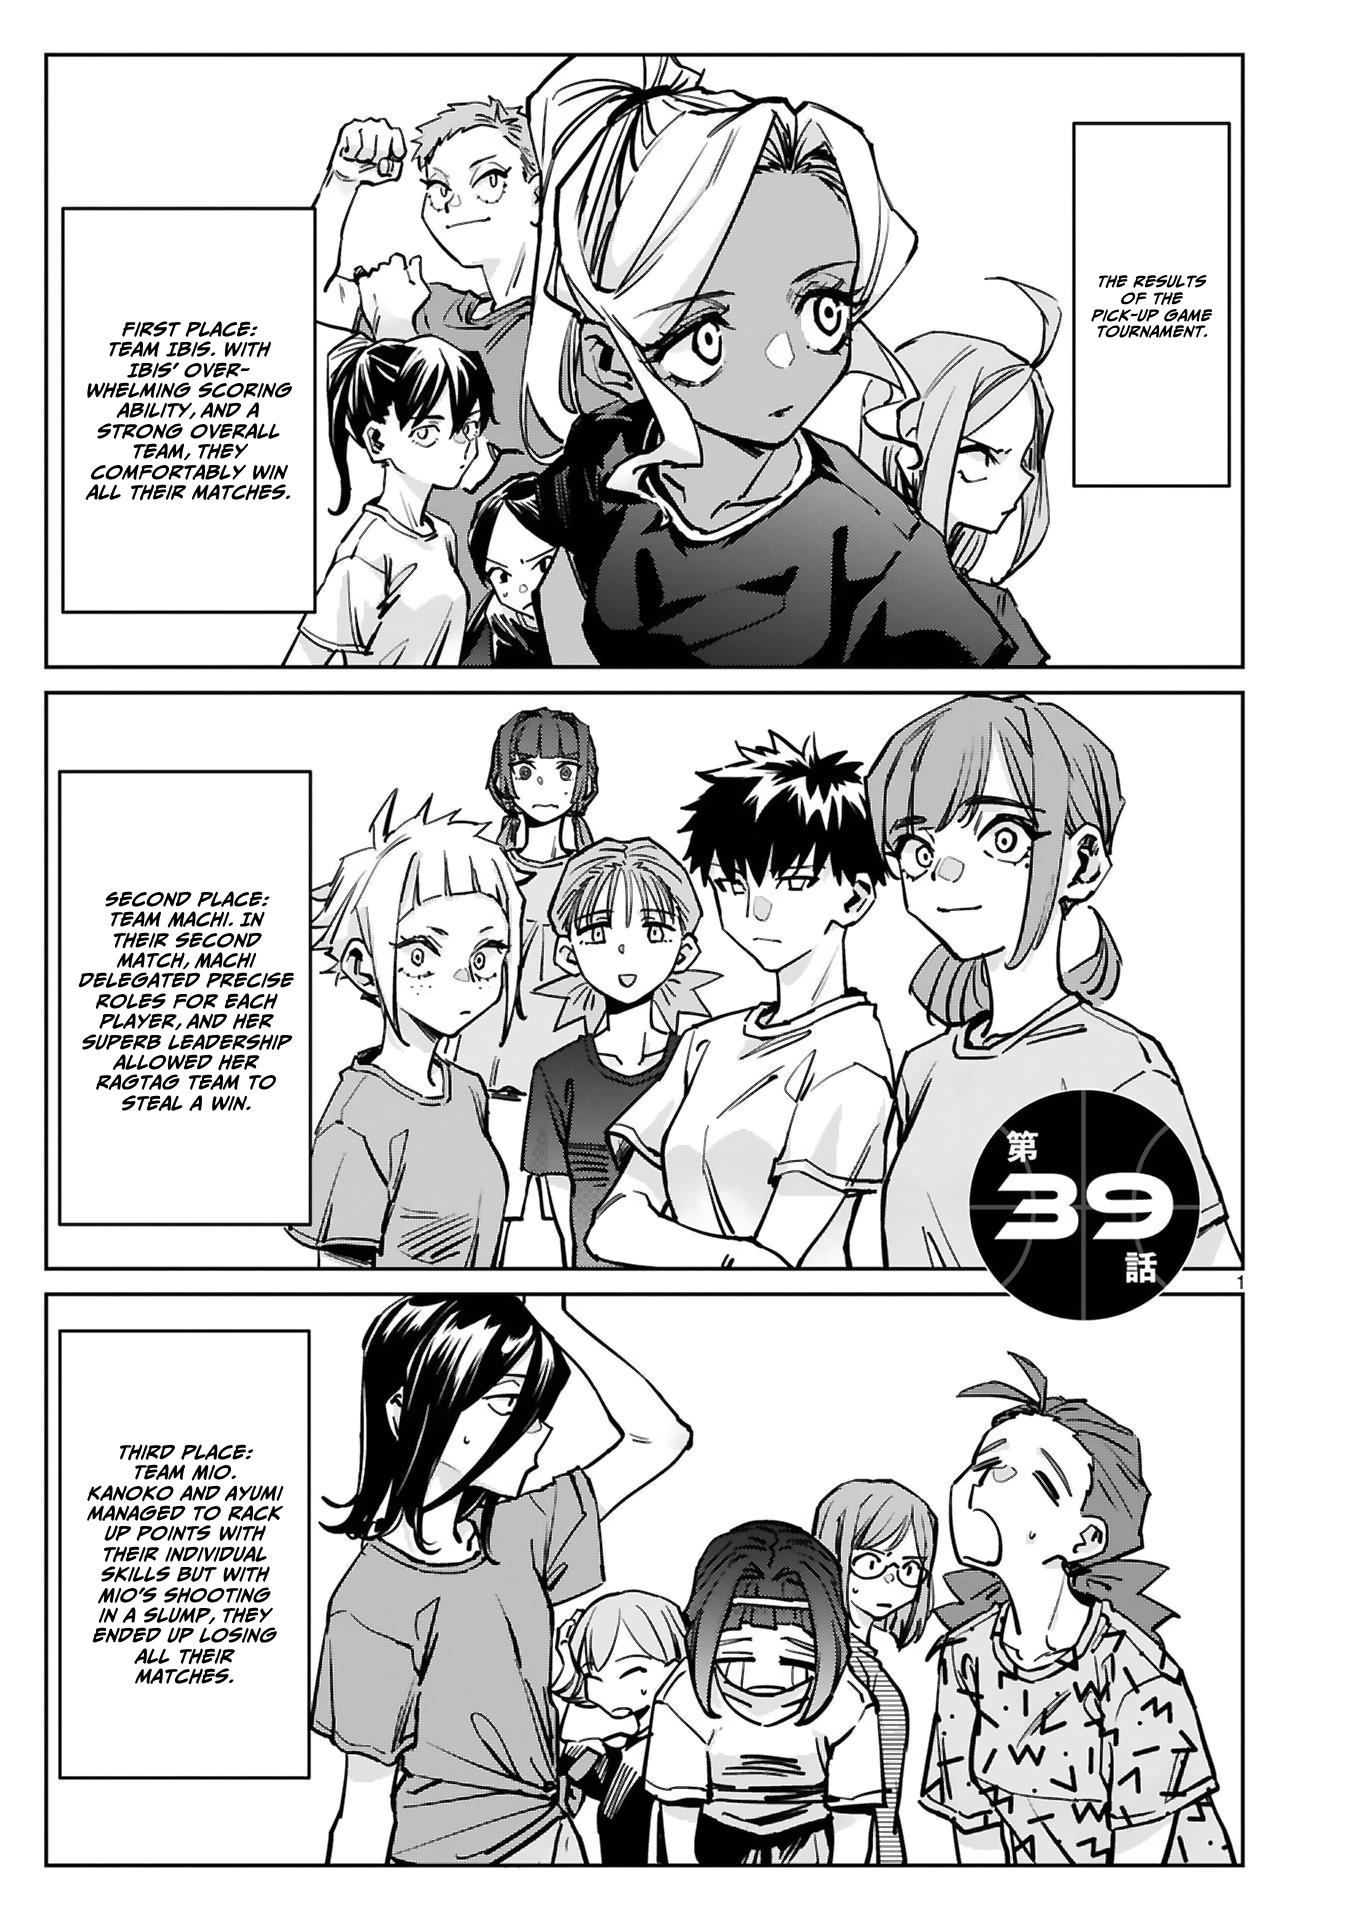 Tsubame Tip Off! - Page 2